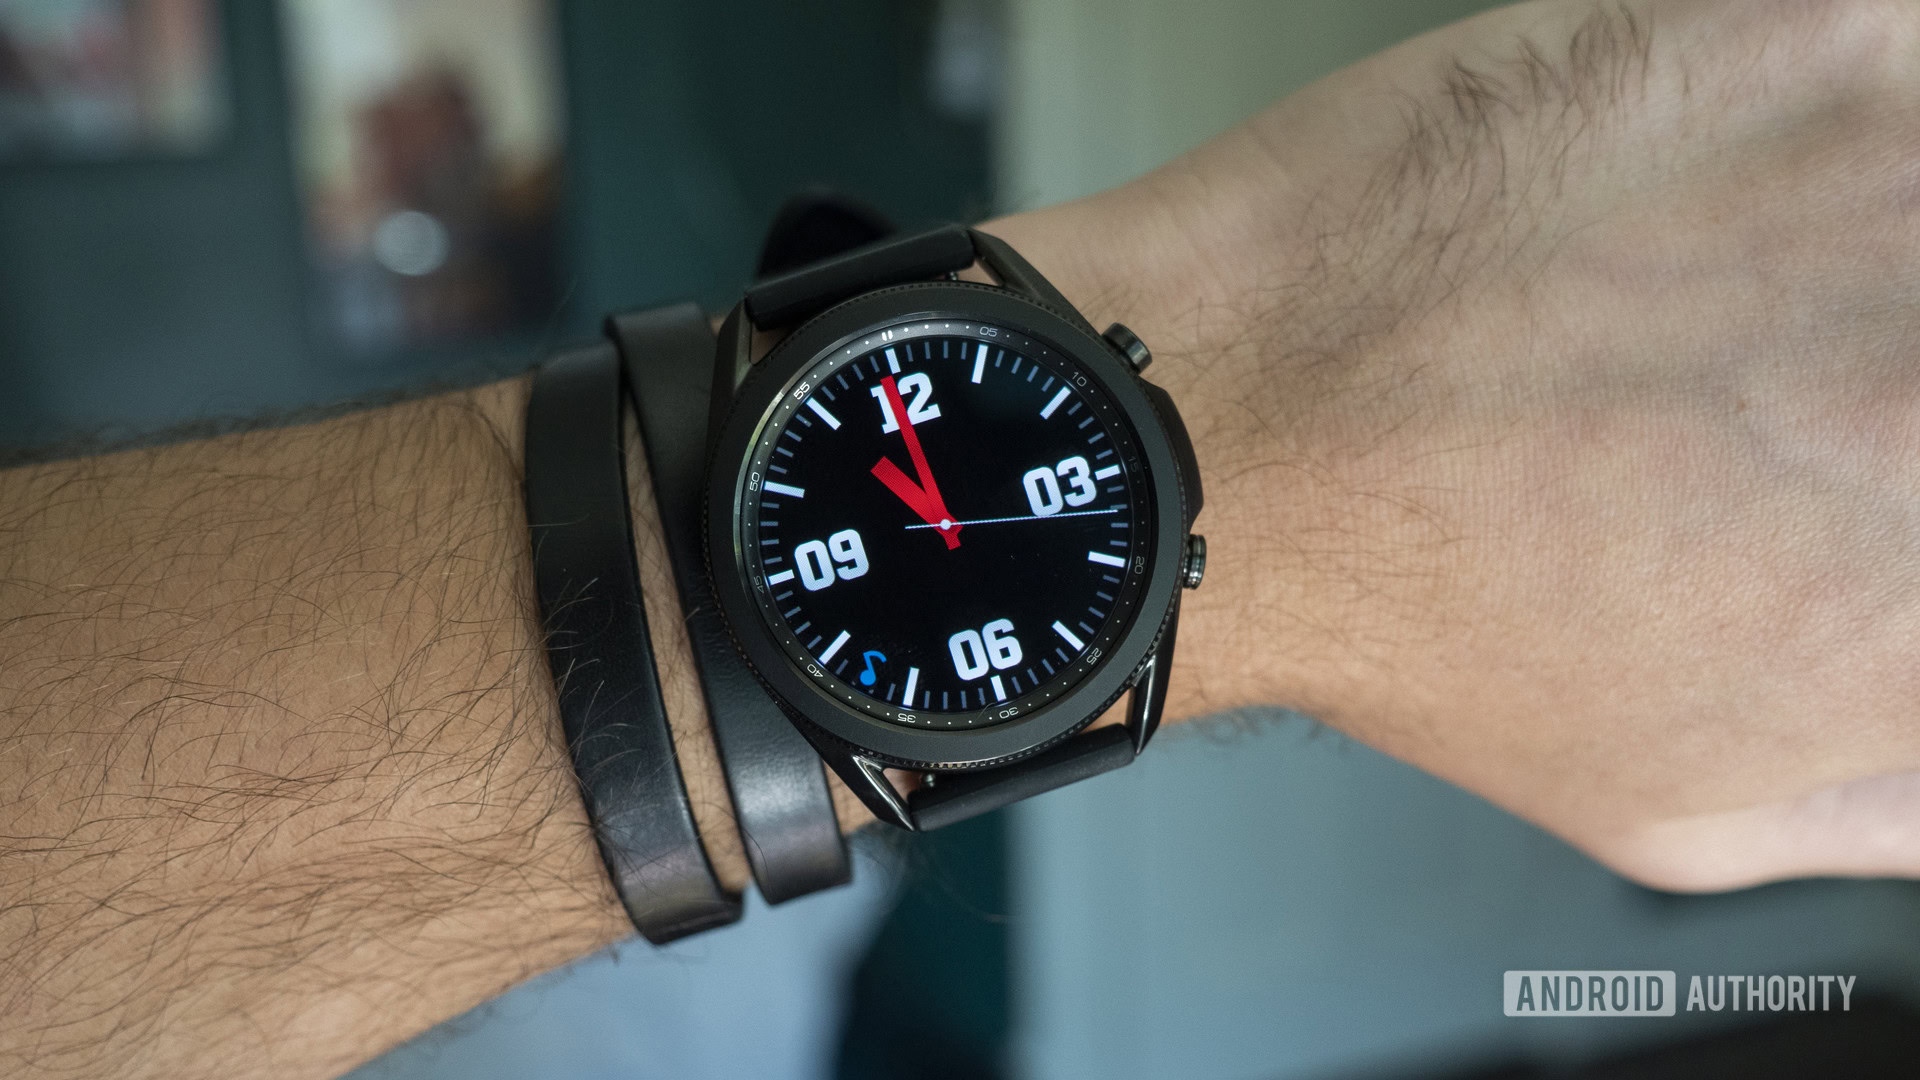 Những vấn đề phổ biến nhất của Samsung Galaxy Watch và cách khắc phục chúng được giải đáp trong hình ảnh bên dưới. Khám phá cách giải quyết những sự cố và tận hưởng trọn vẹn kinh nghiệm đồng hồ thông minh của bạn.